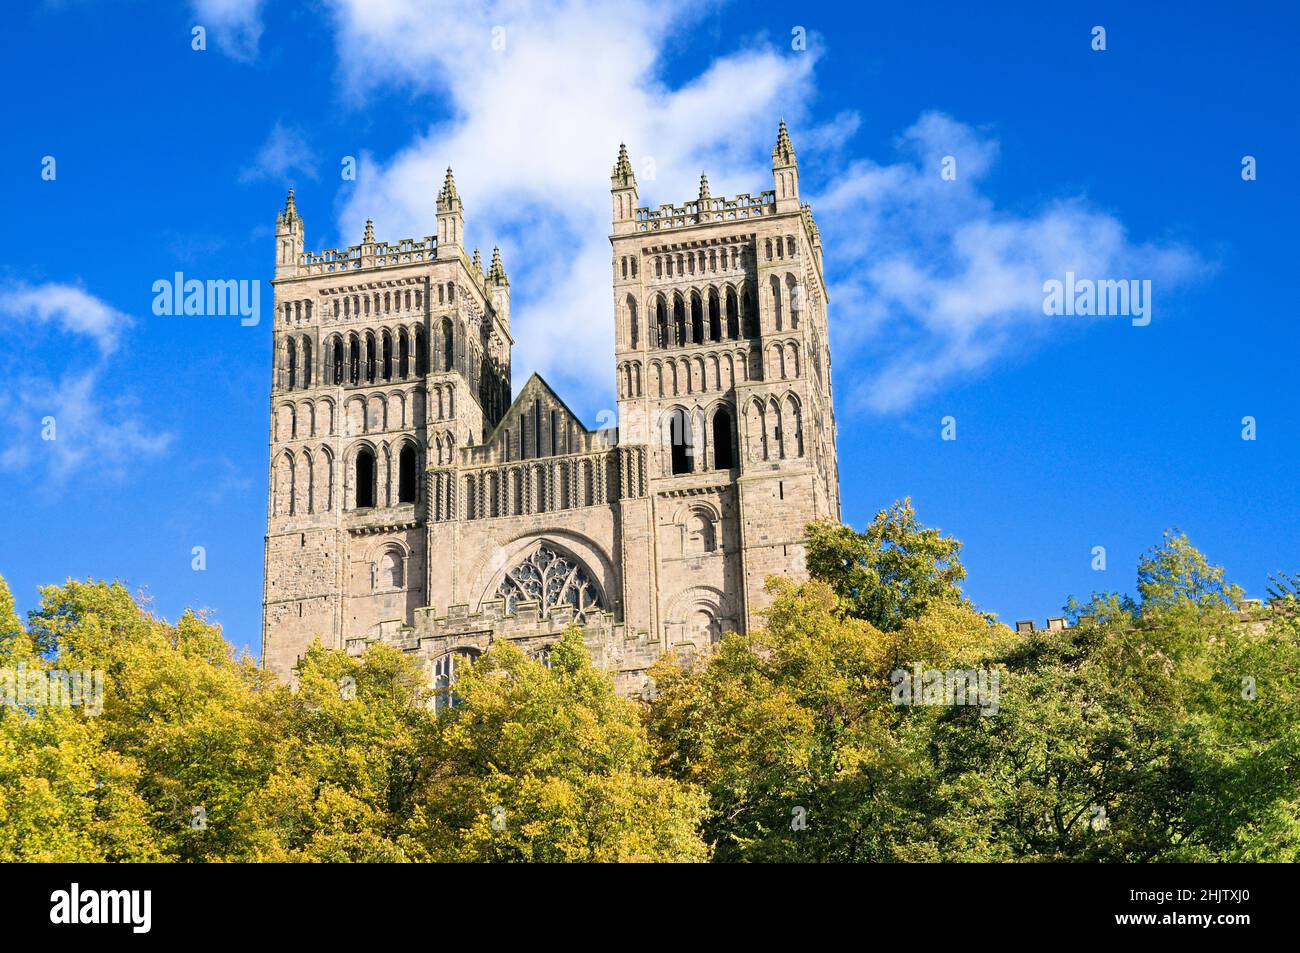 Vue sur l'extérieur de la cathédrale de Durham par une journée ensoleillée avec ciel bleu et nuages, ville de Durham, comté de Durham, Angleterre du Nord-est, Royaume-Uni Banque D'Images